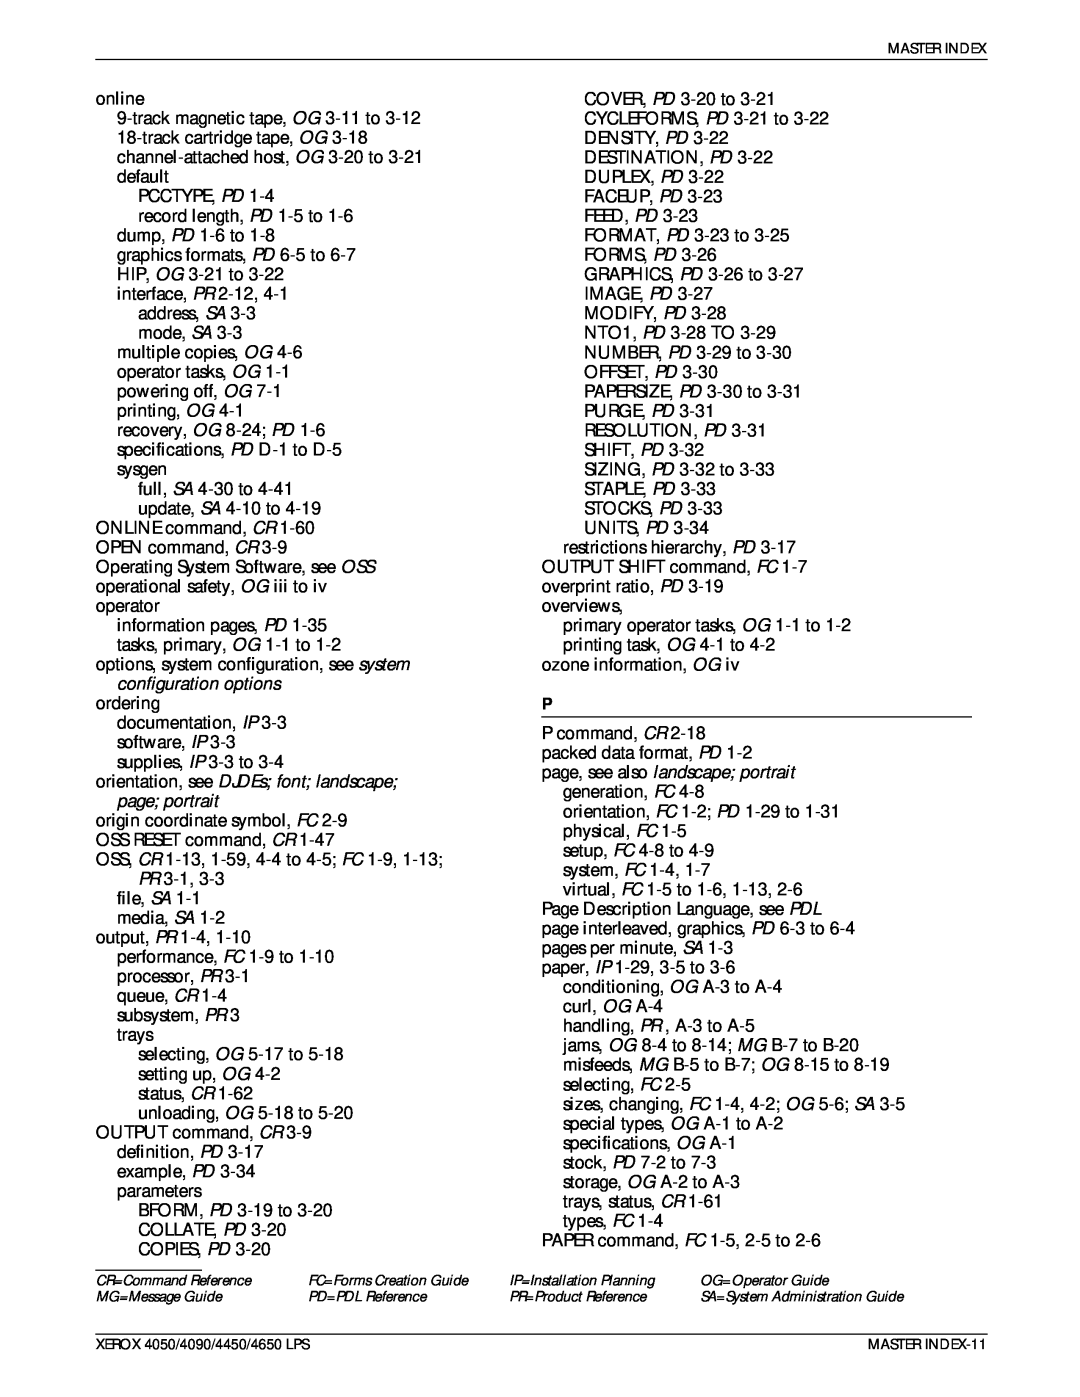 Xerox 4650 LPS manual 